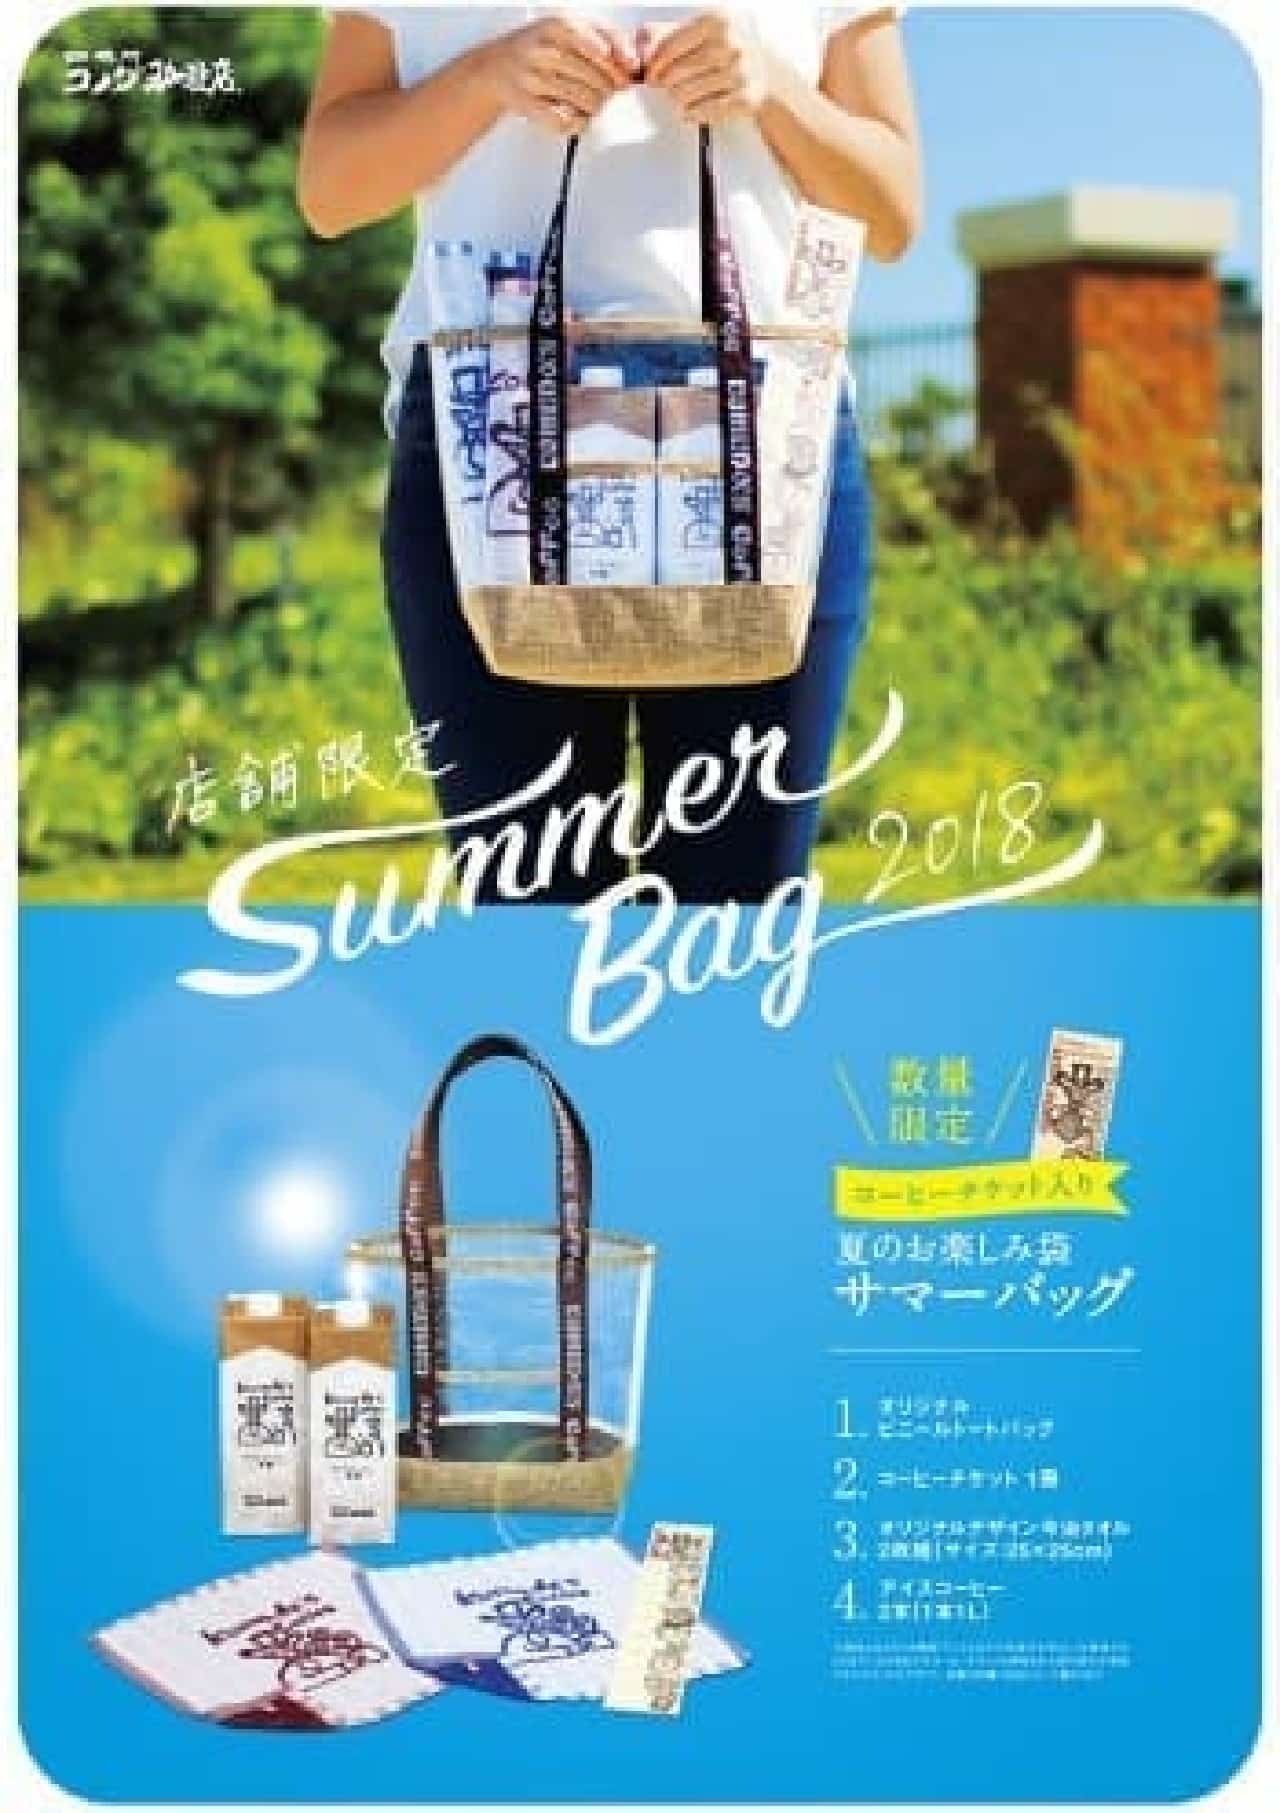 Komeda Coffee Shop "Summer Bag"